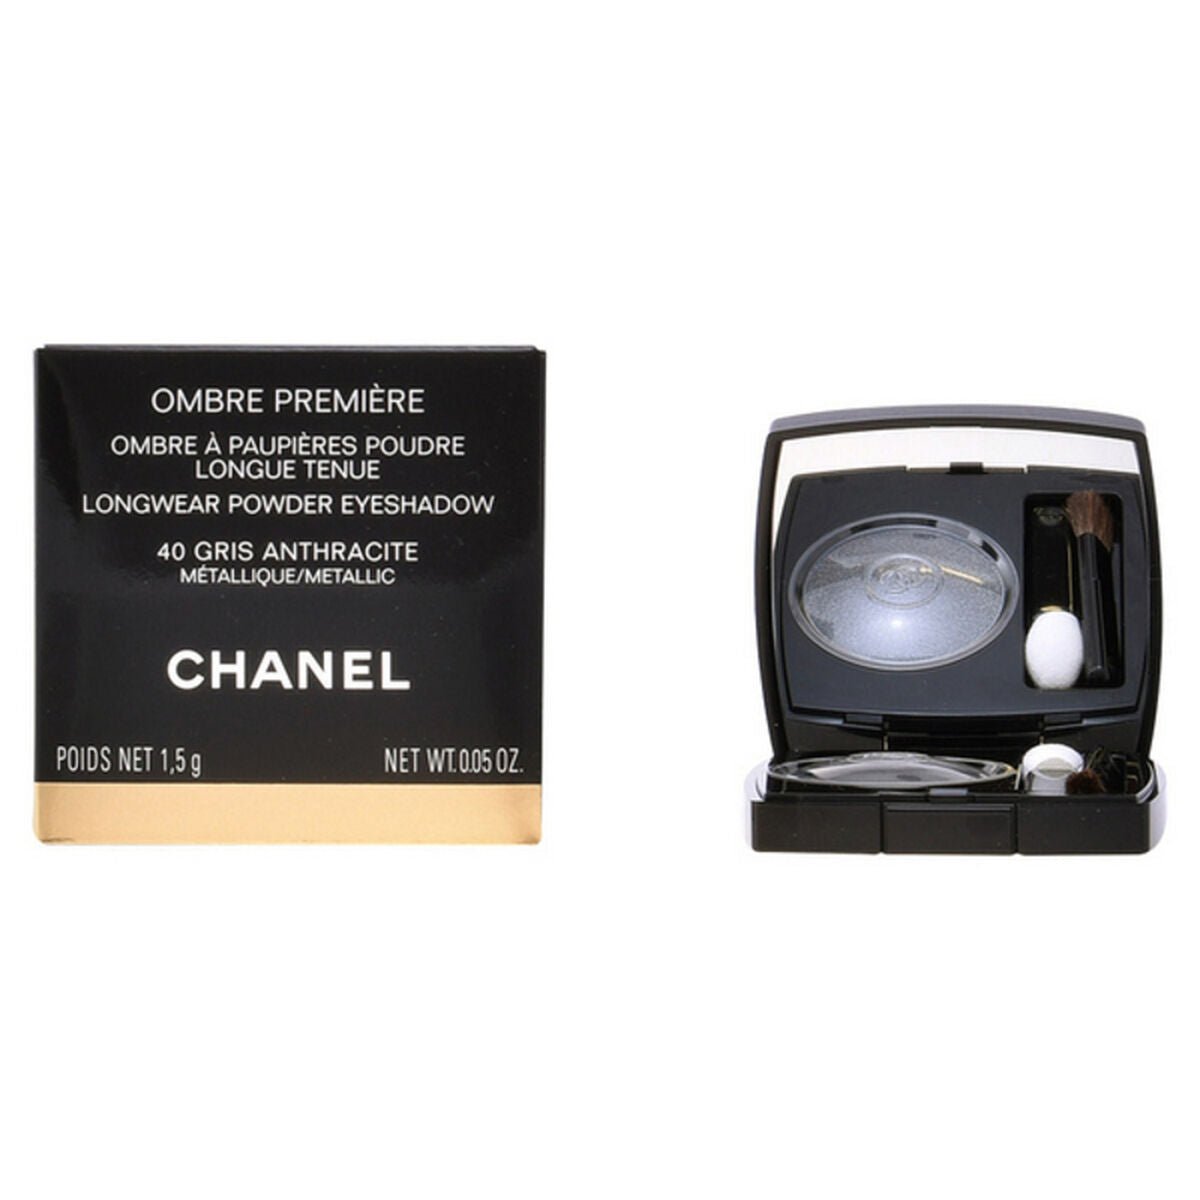 Chanel Ombre Premiere - Longwear Powder Eyeshadow | 36 Desert Rouge